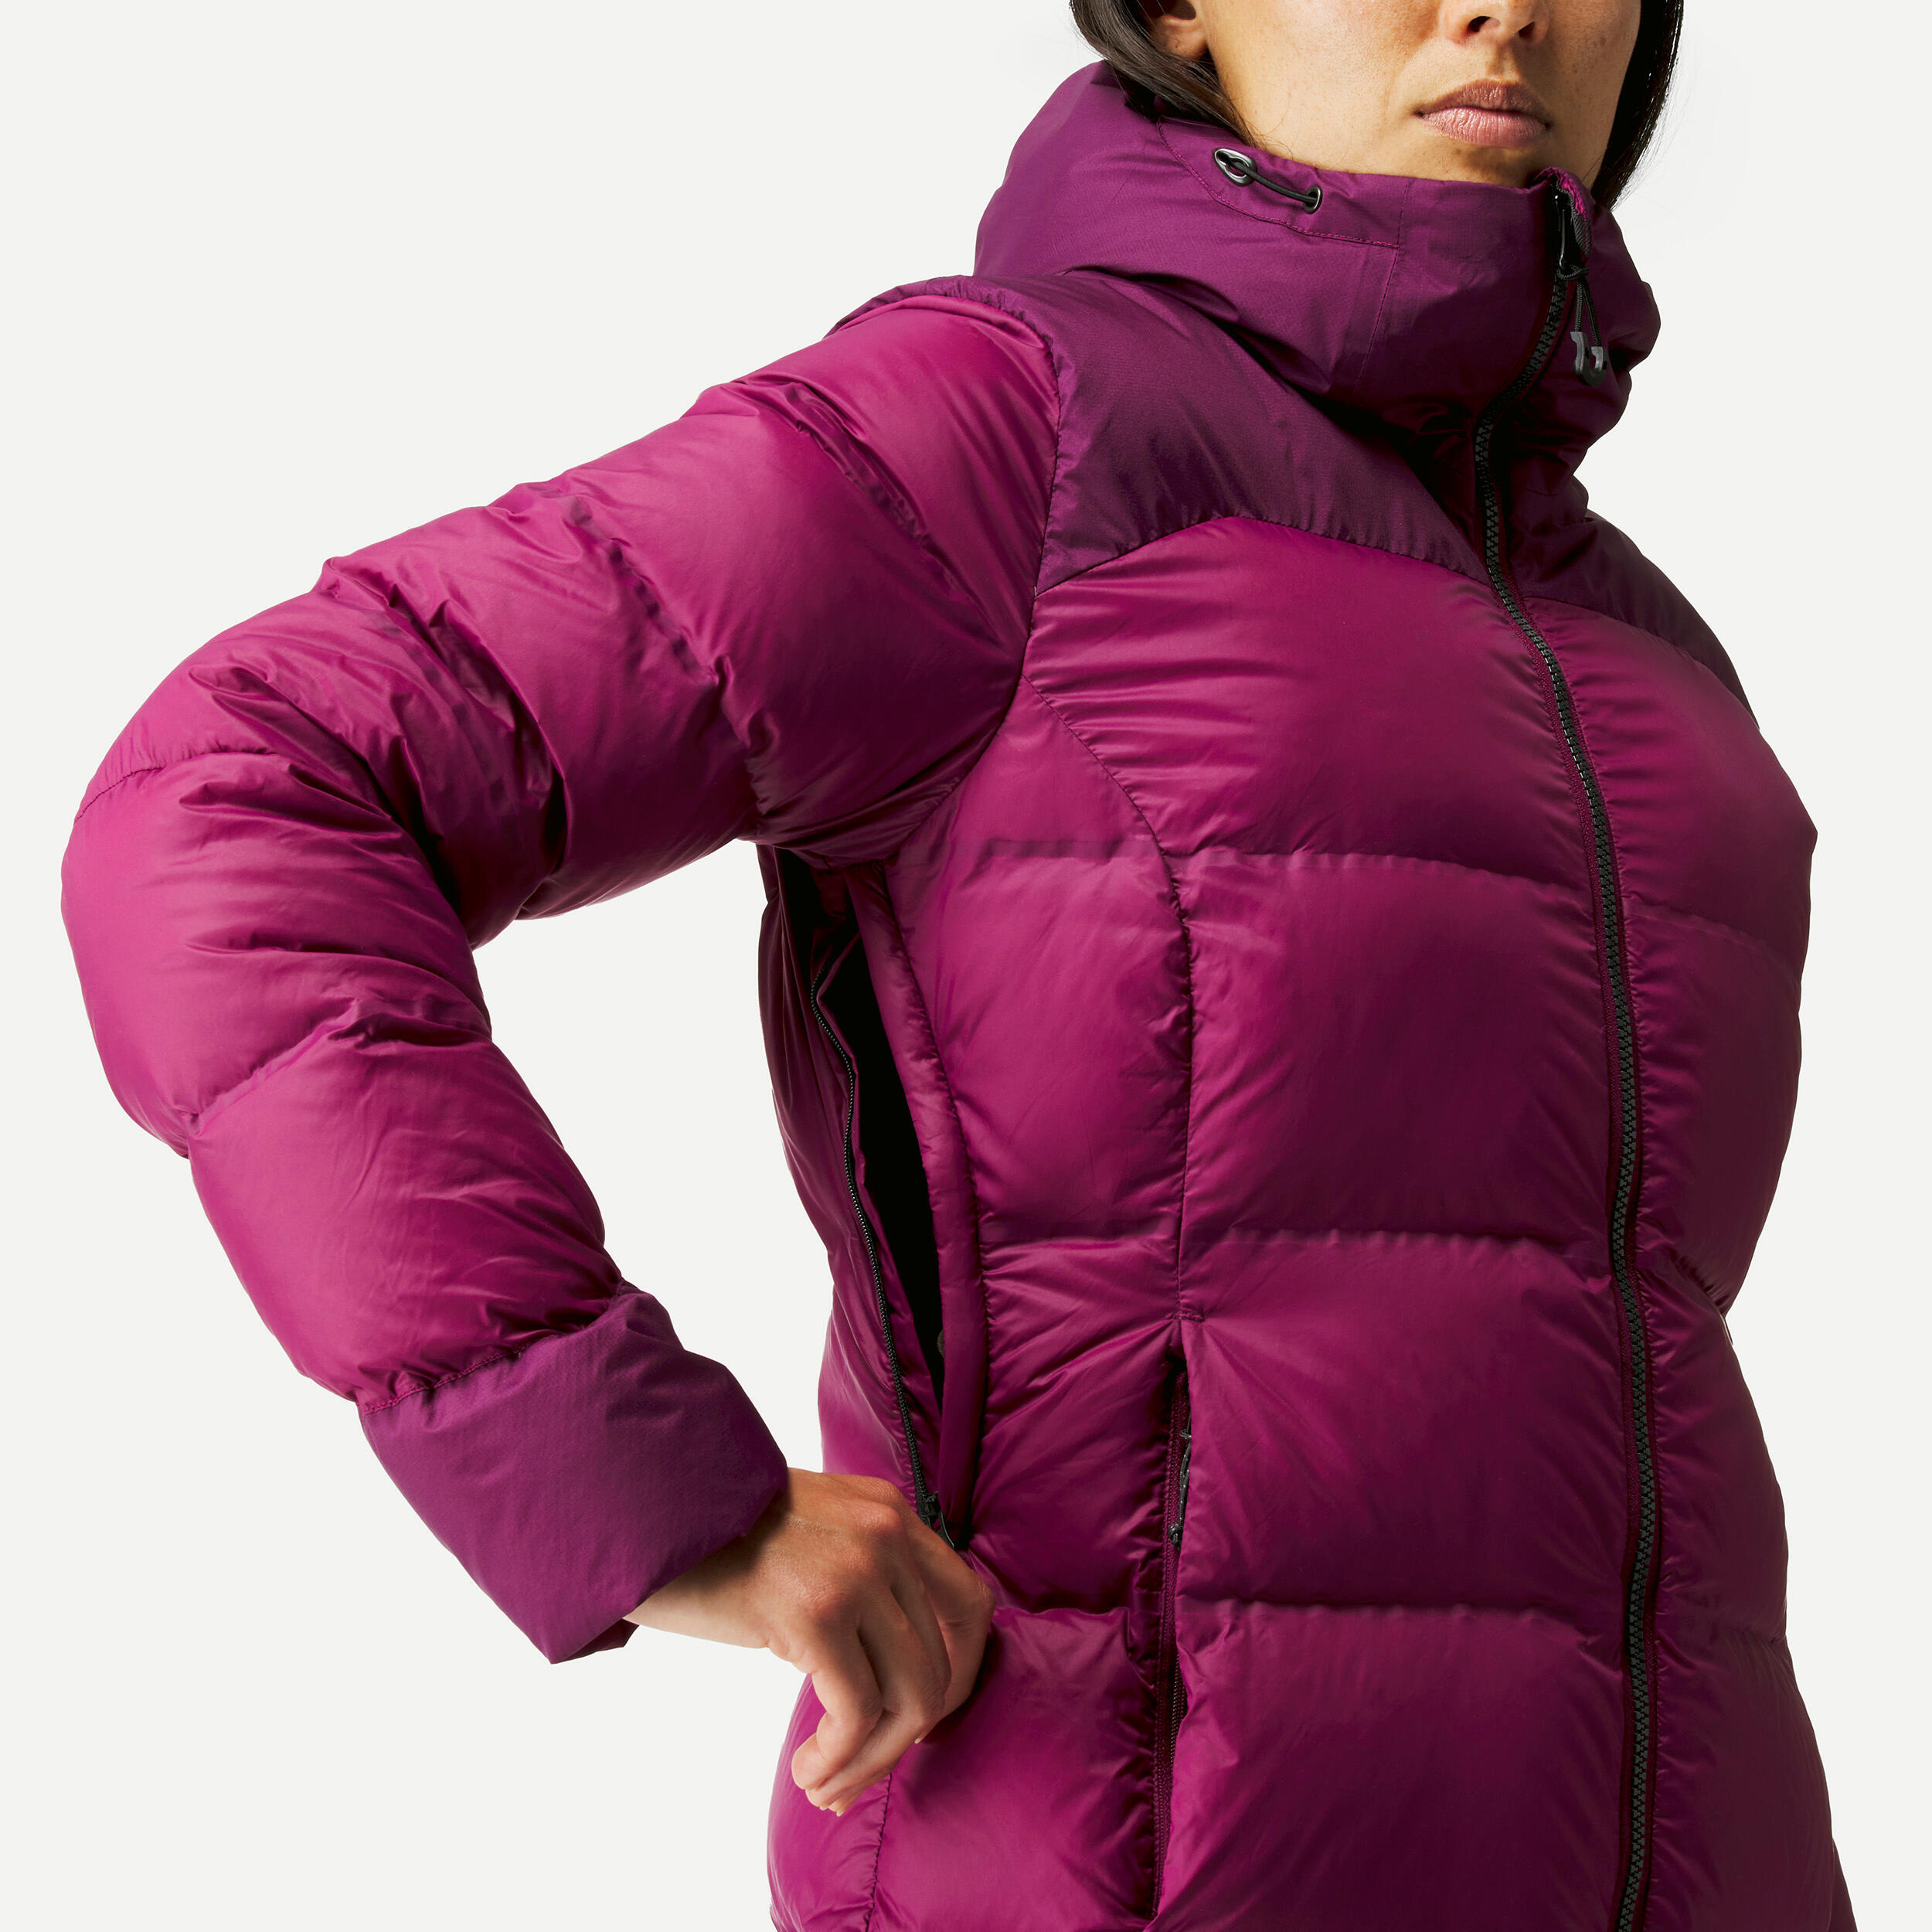 Women’s Mountain Trekking Down Jacket with Hood - MT900 -18°C 6/10